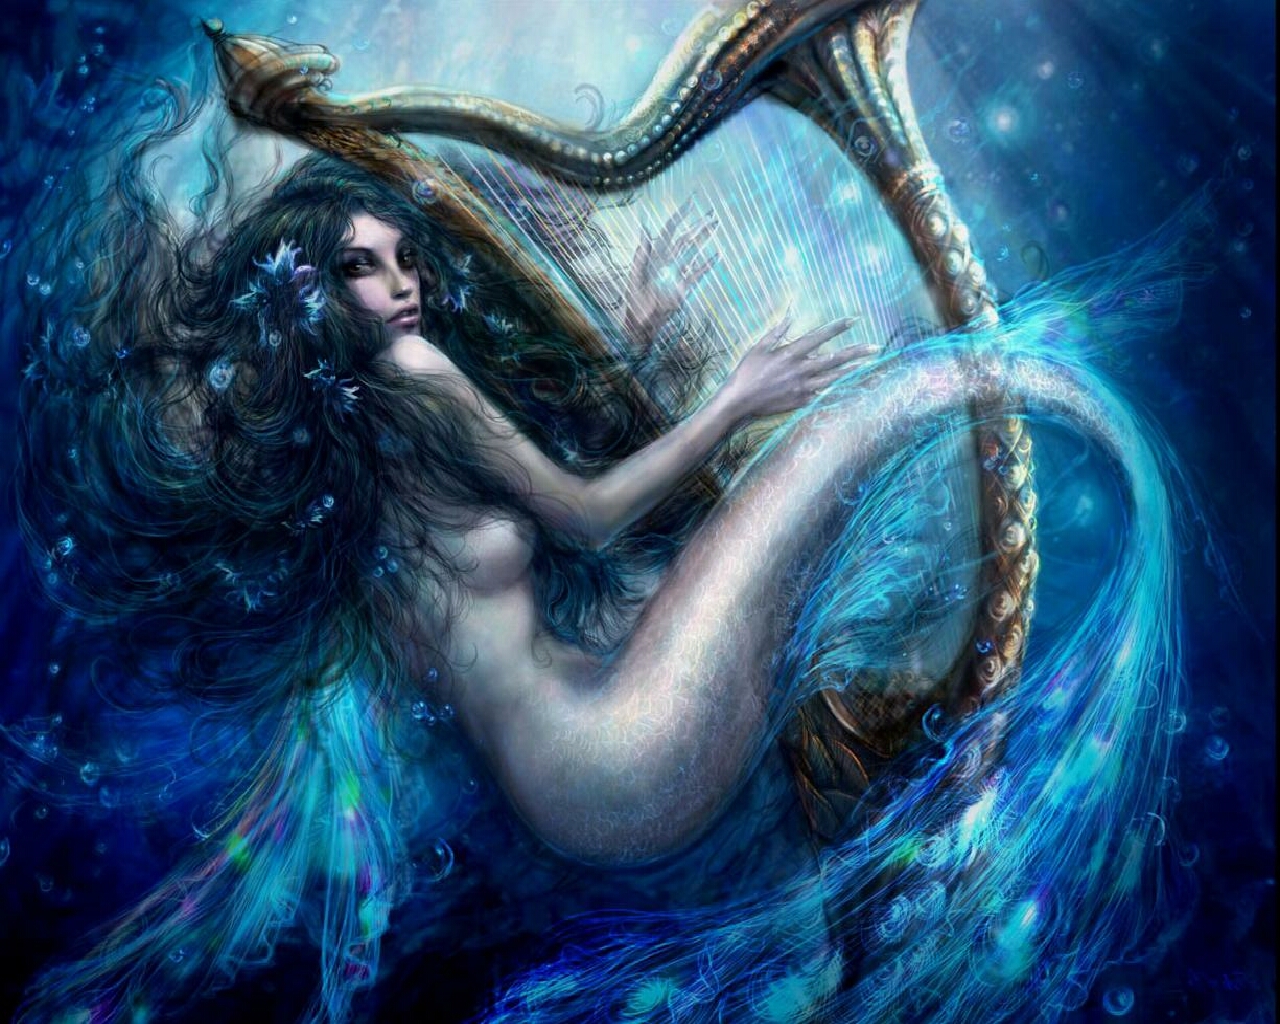 Harp Mermaid Artwork Wallpaper Dj